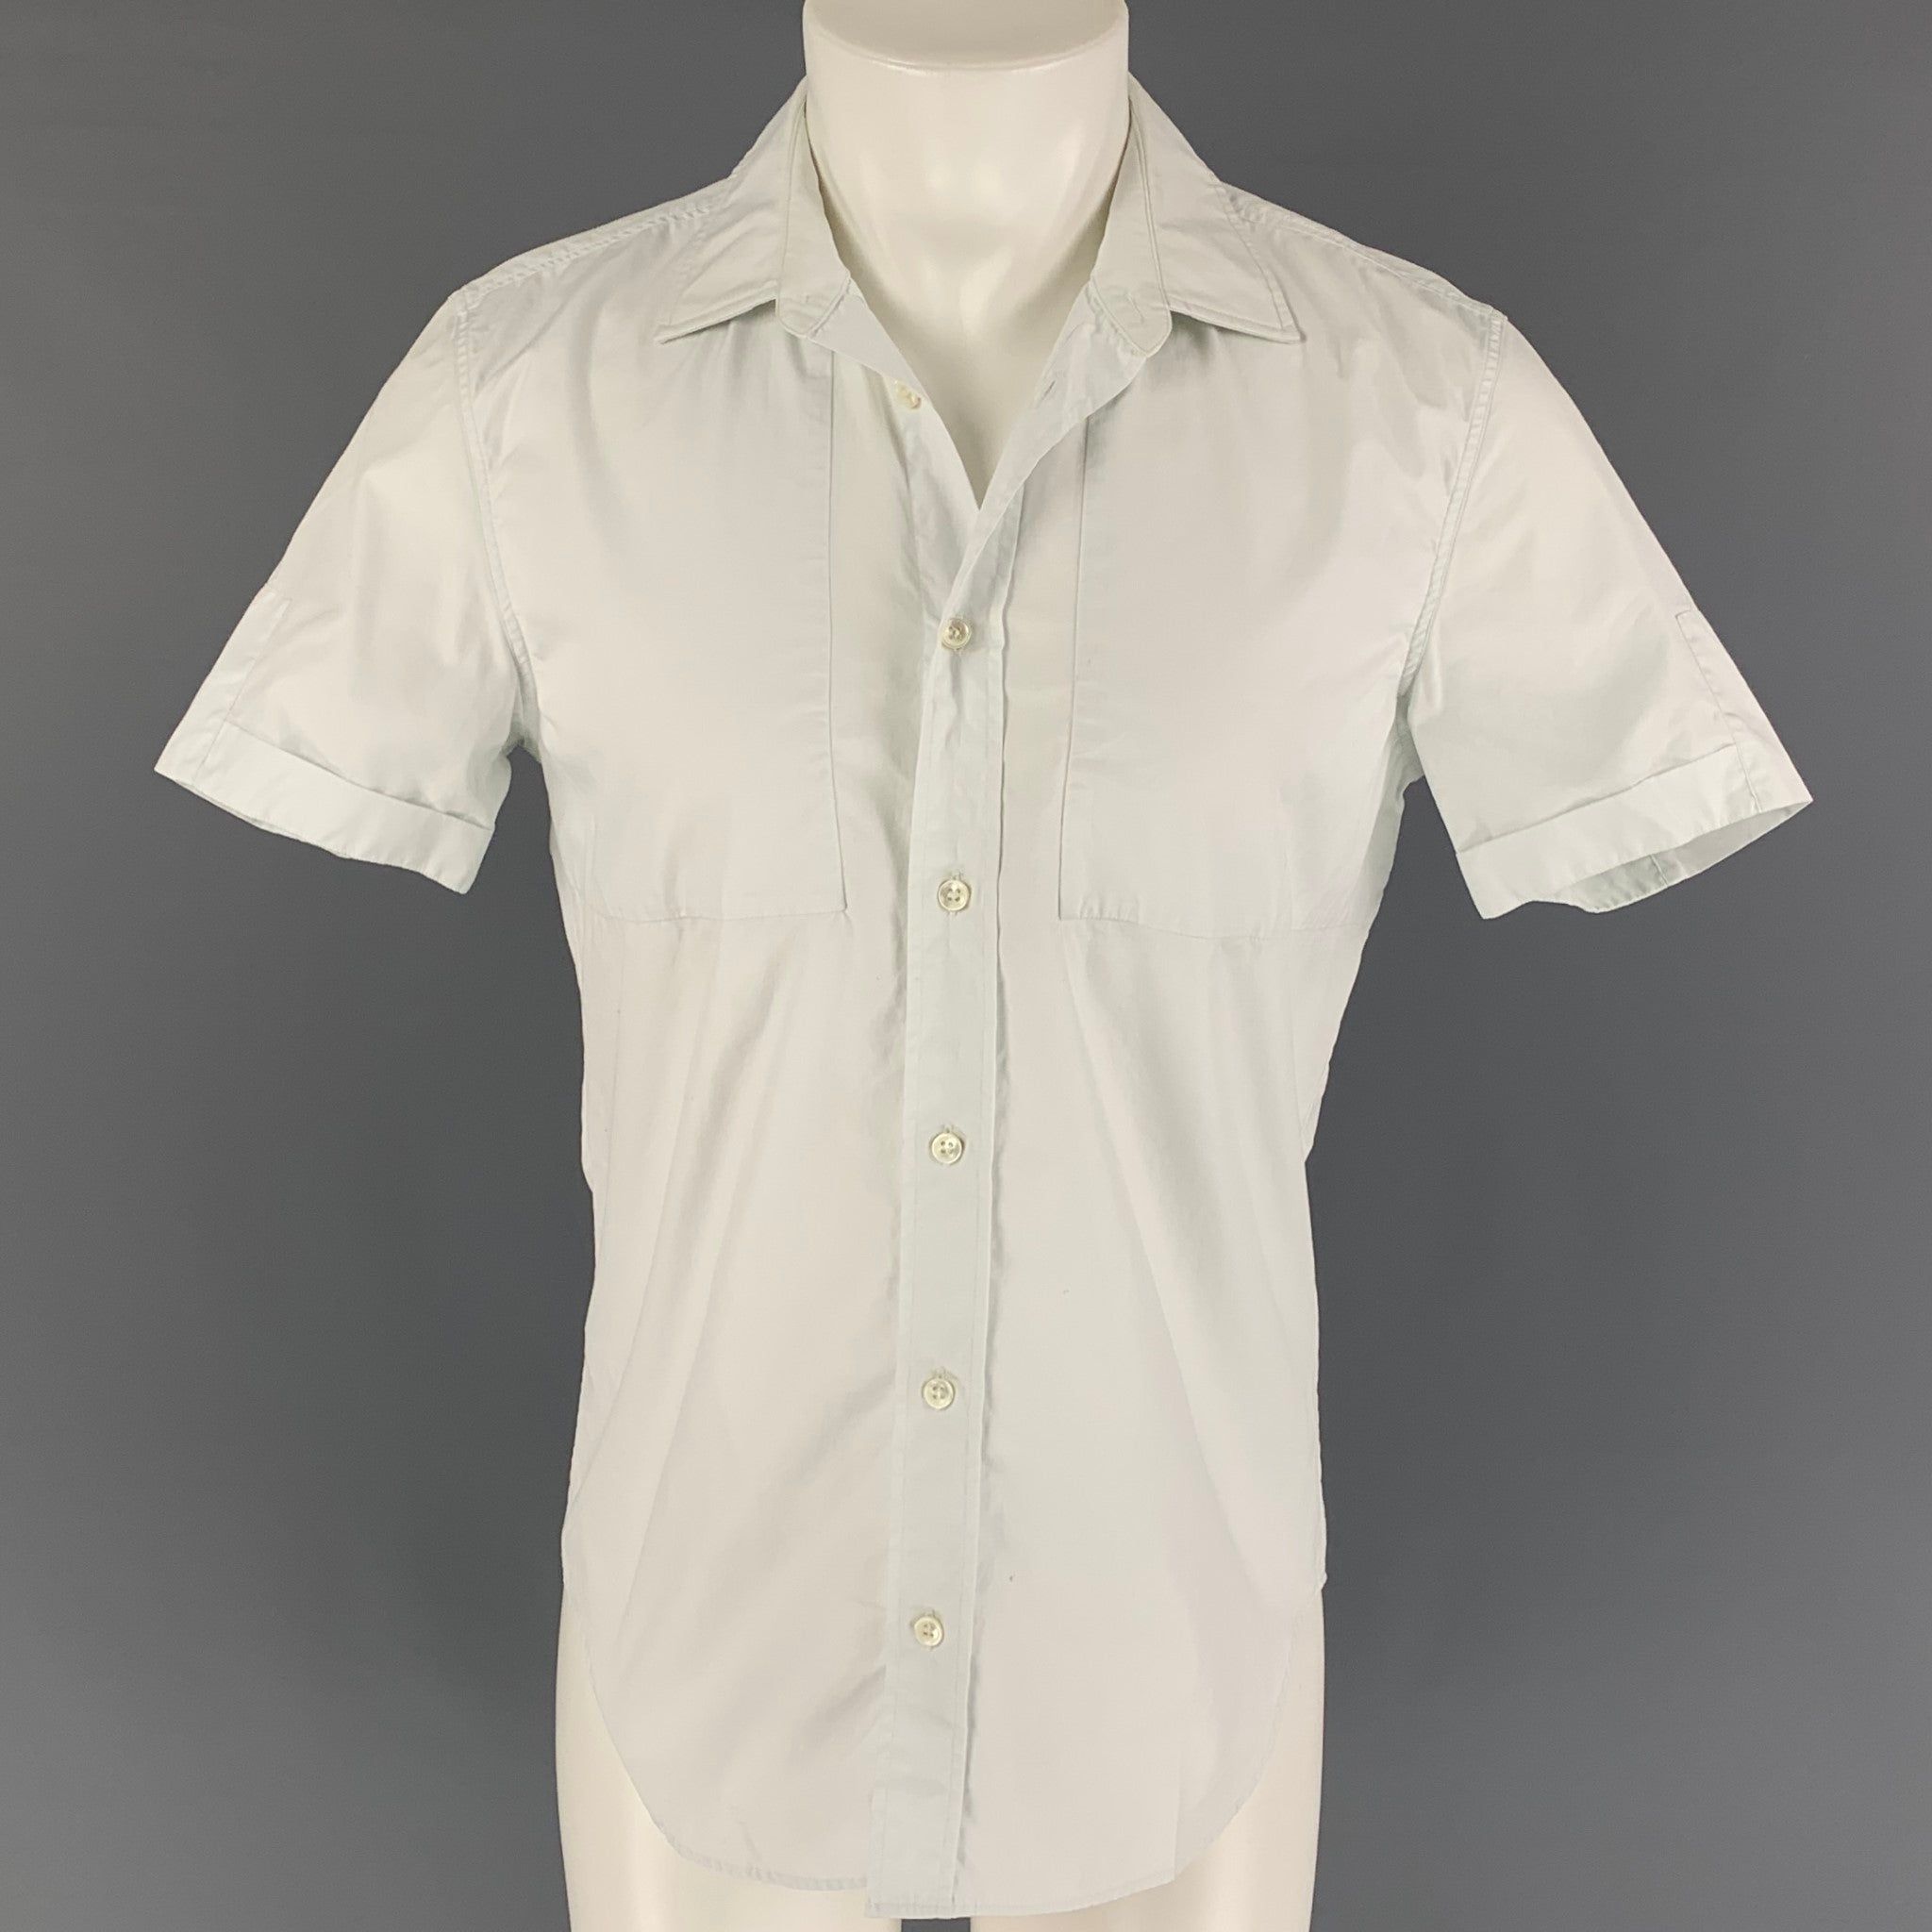 Maison Margiela White Cotton Short Sleeve Shirt Size US S / EU 44-46 / 1 - 1 Preview